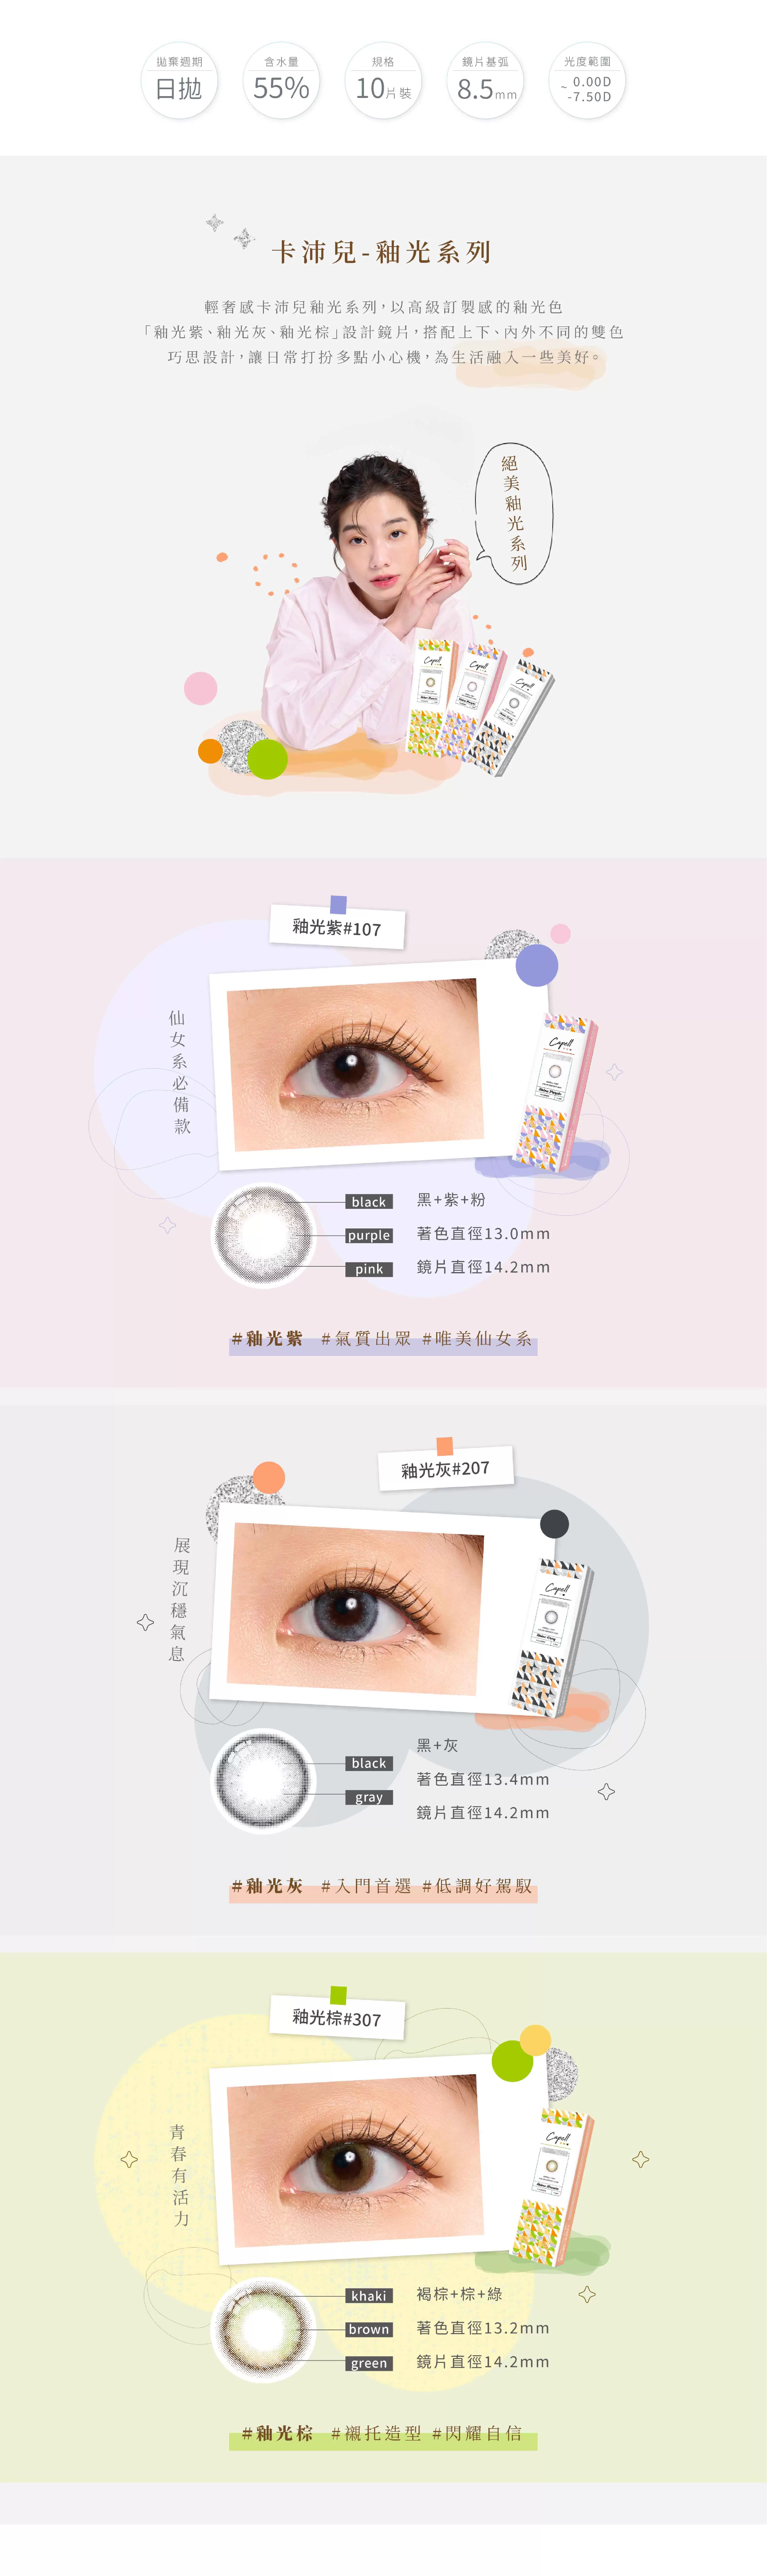 釉光灰,卡沛兒,彩色日拋,混血小直徑,台灣品牌隱形眼鏡